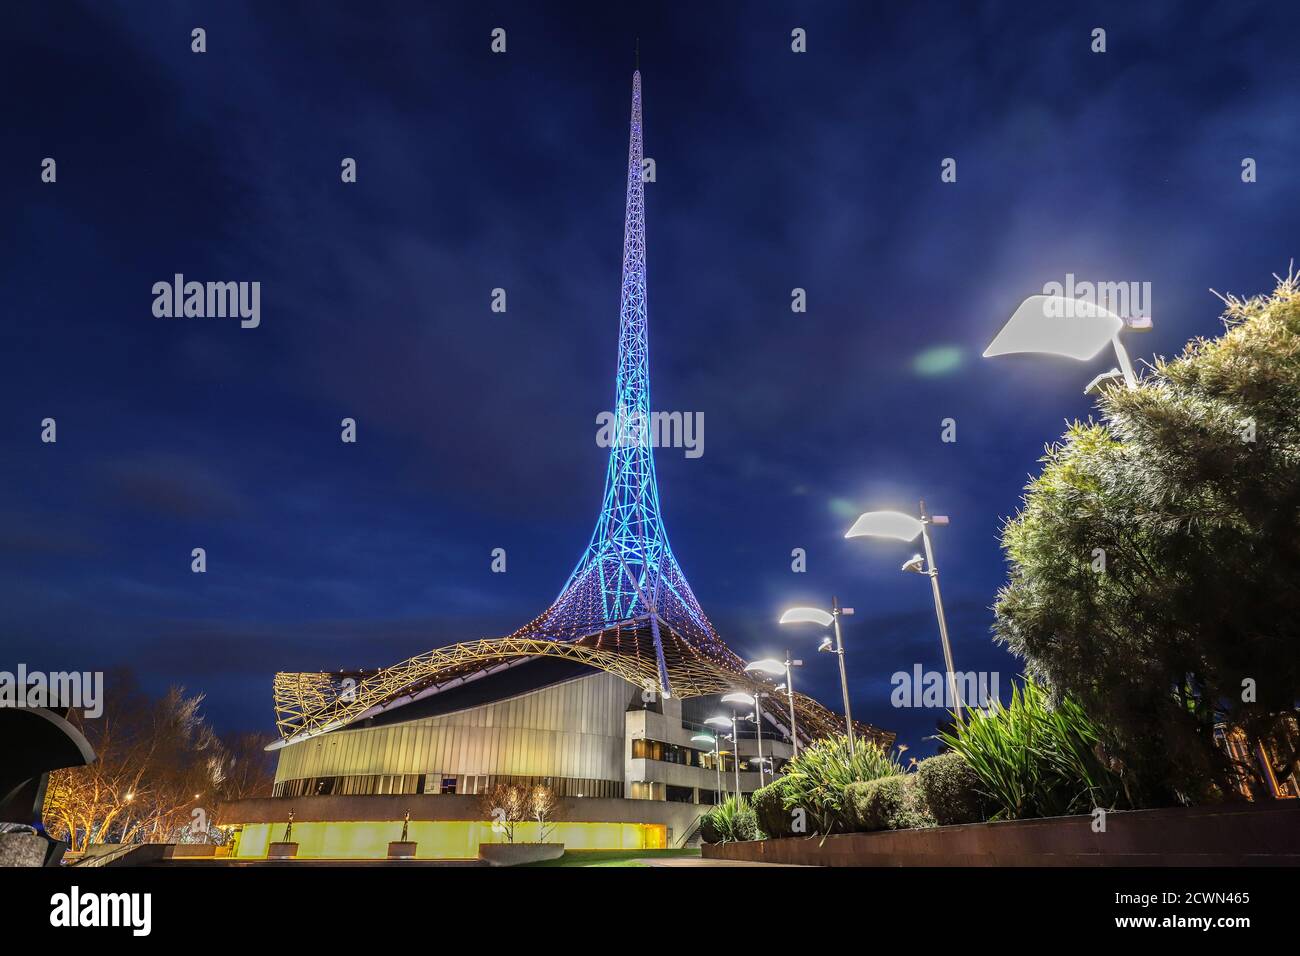 Melbourne Australien: Arts Centre Spire beleuchtet bei Nacht. Stockfoto